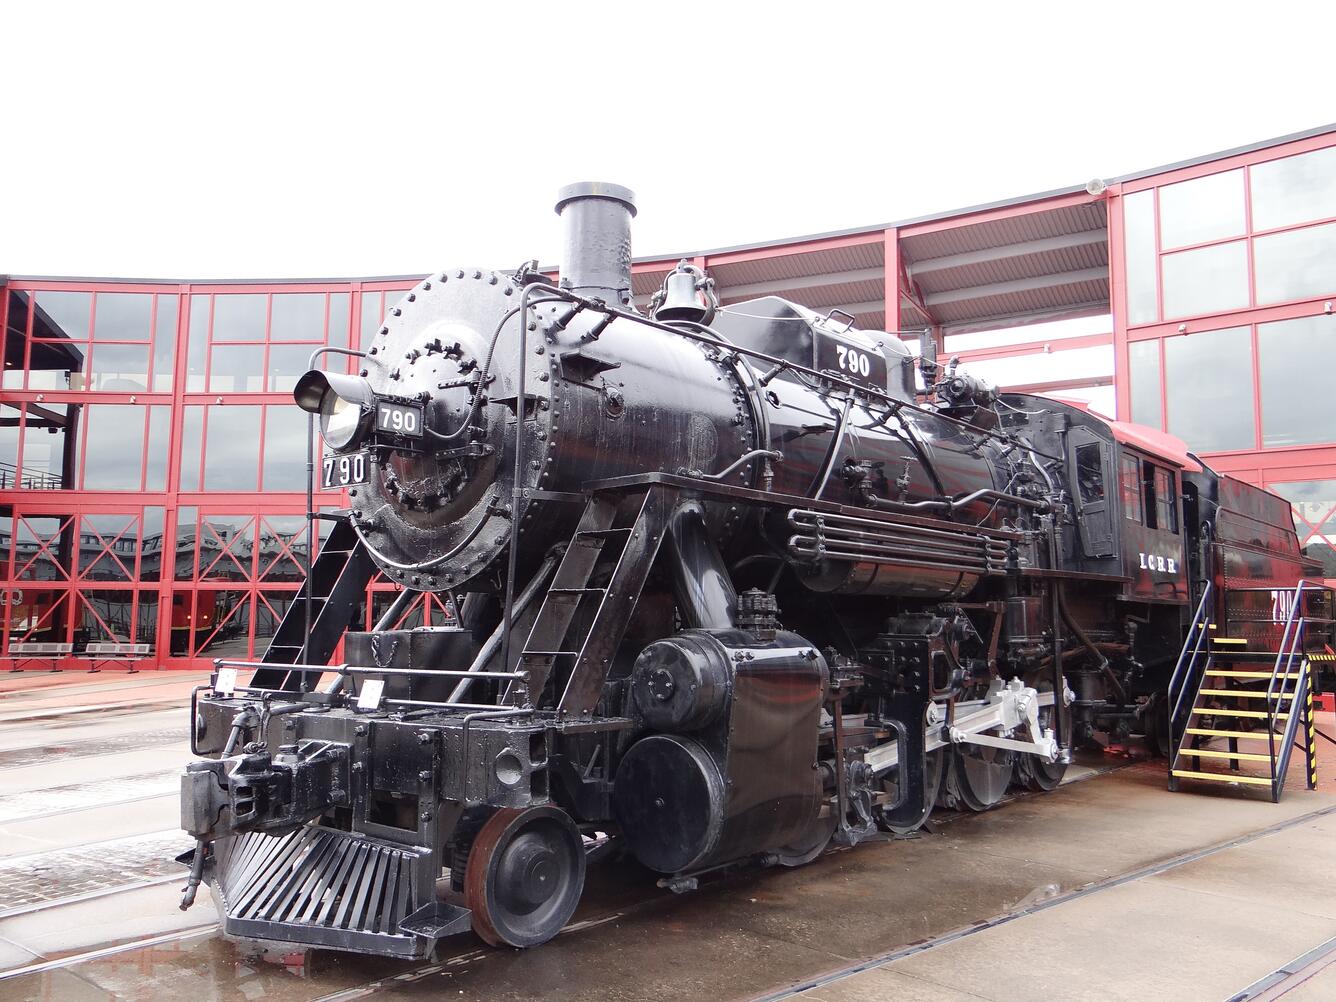 Image: Steam Engine at Steamtown